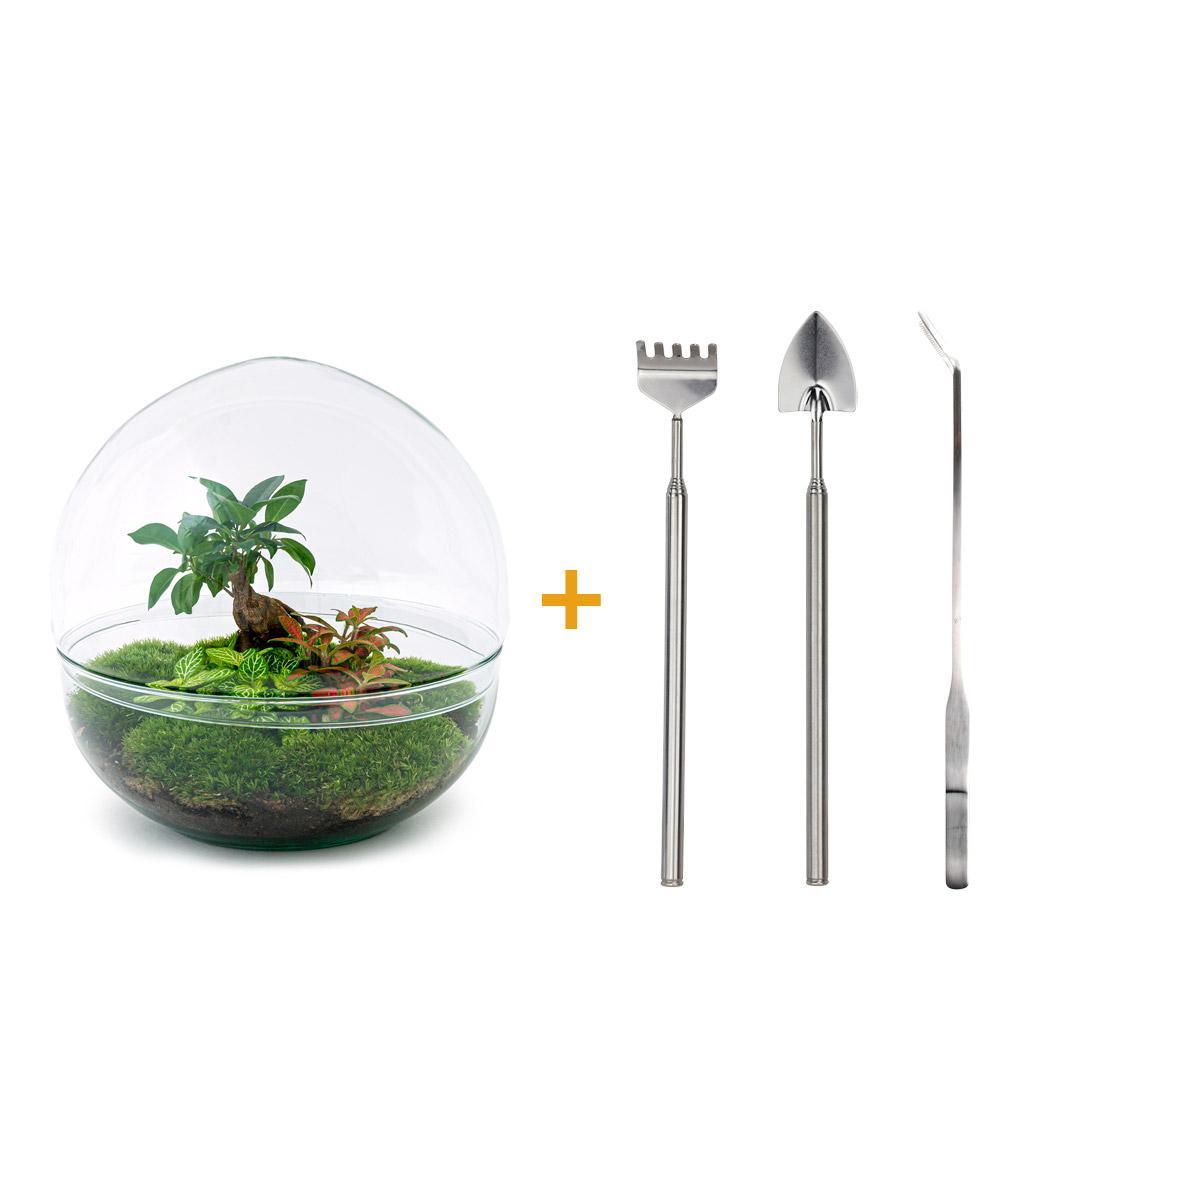 DIY terrarium - Dome XL - Ficus Ginseng Bonsai - ↑ 30 cm